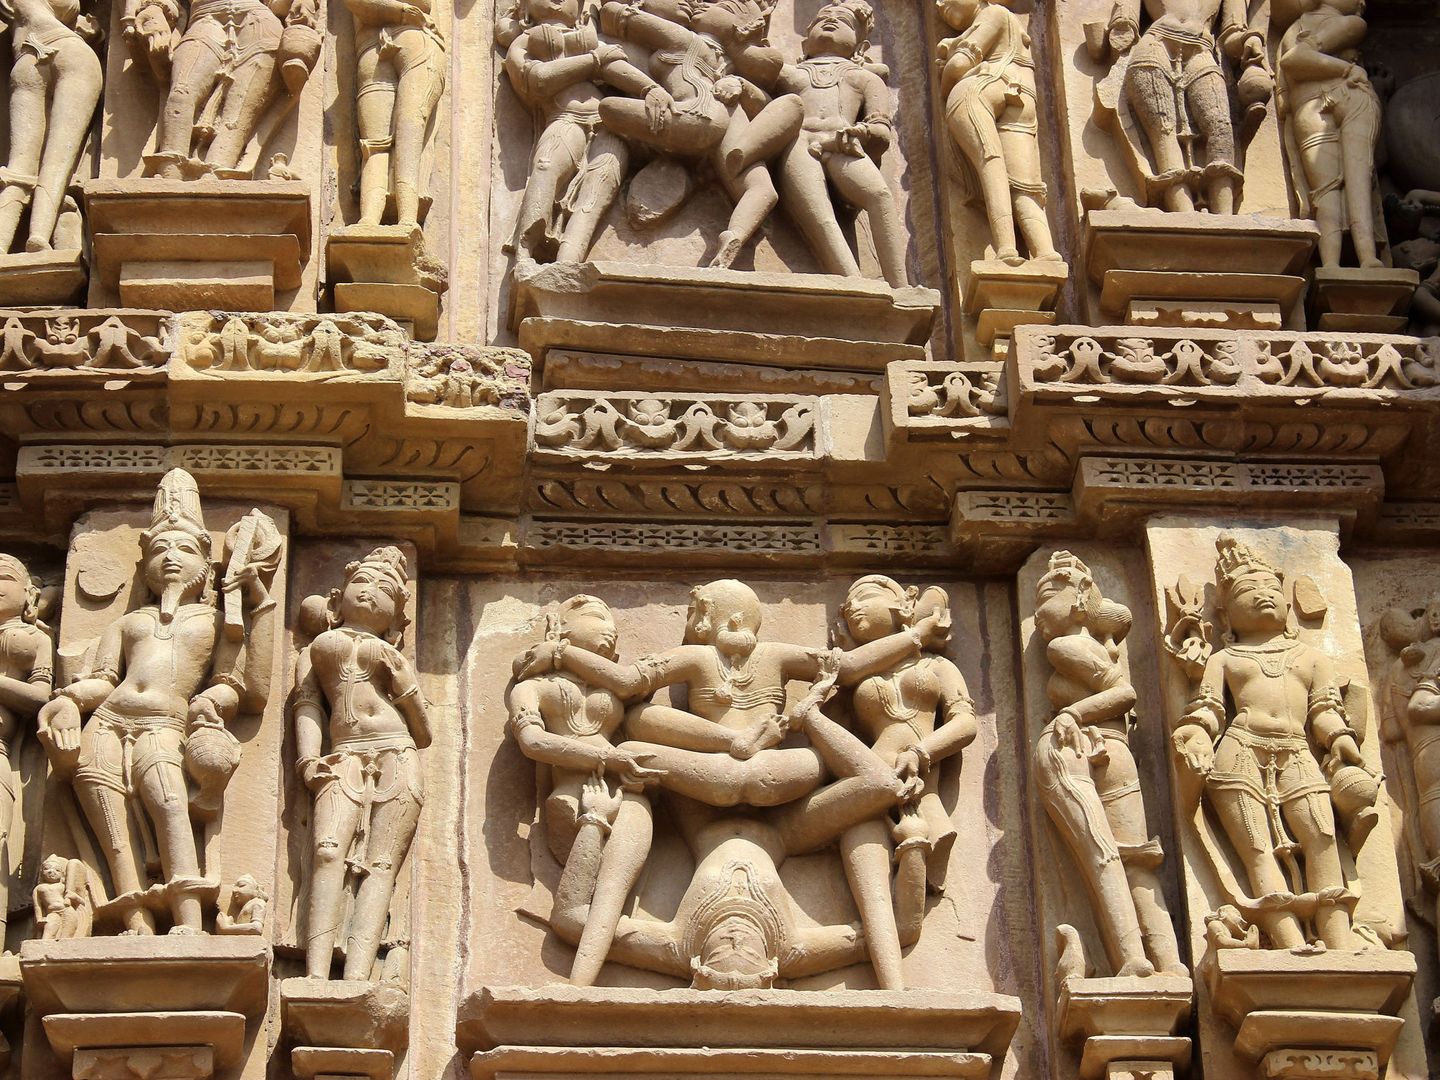 Esculturas inspiradas en el kamasutra en uno de los templos del centro de la India. (EFE/Luis Ángel Reglero)